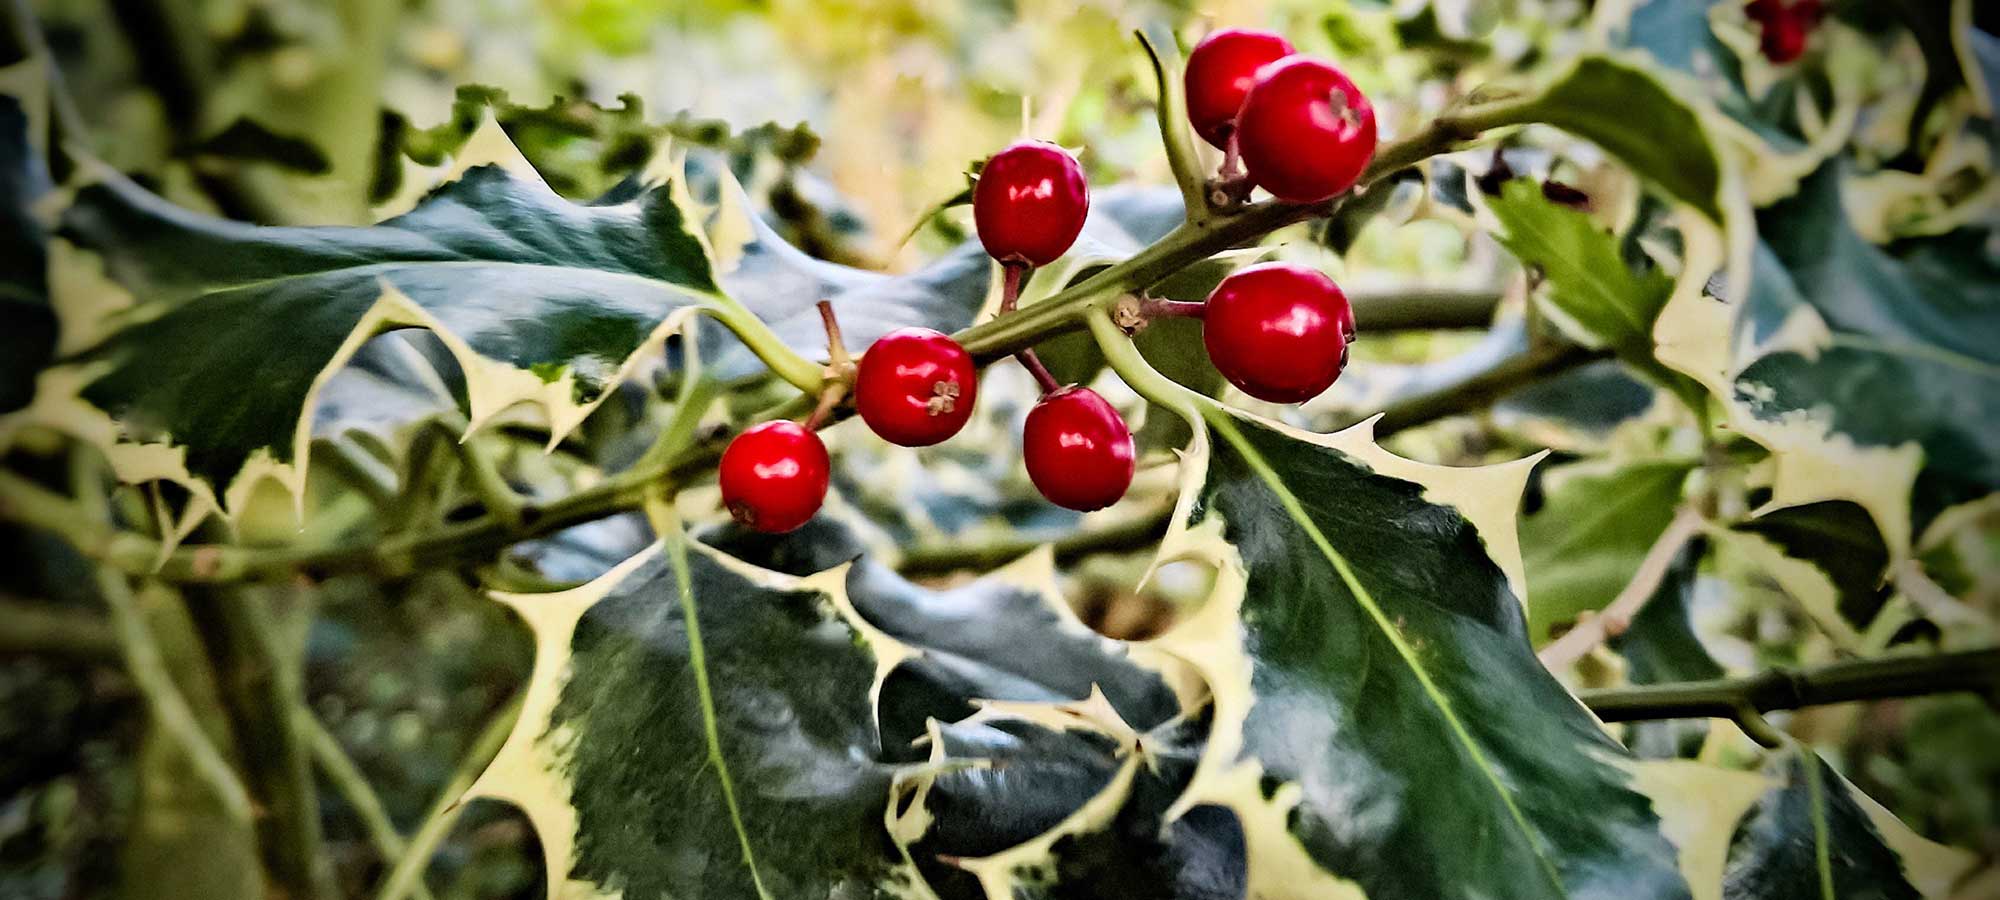 Immergrüne Pflanzen: Ilex mit rotem Fruchtschmuck